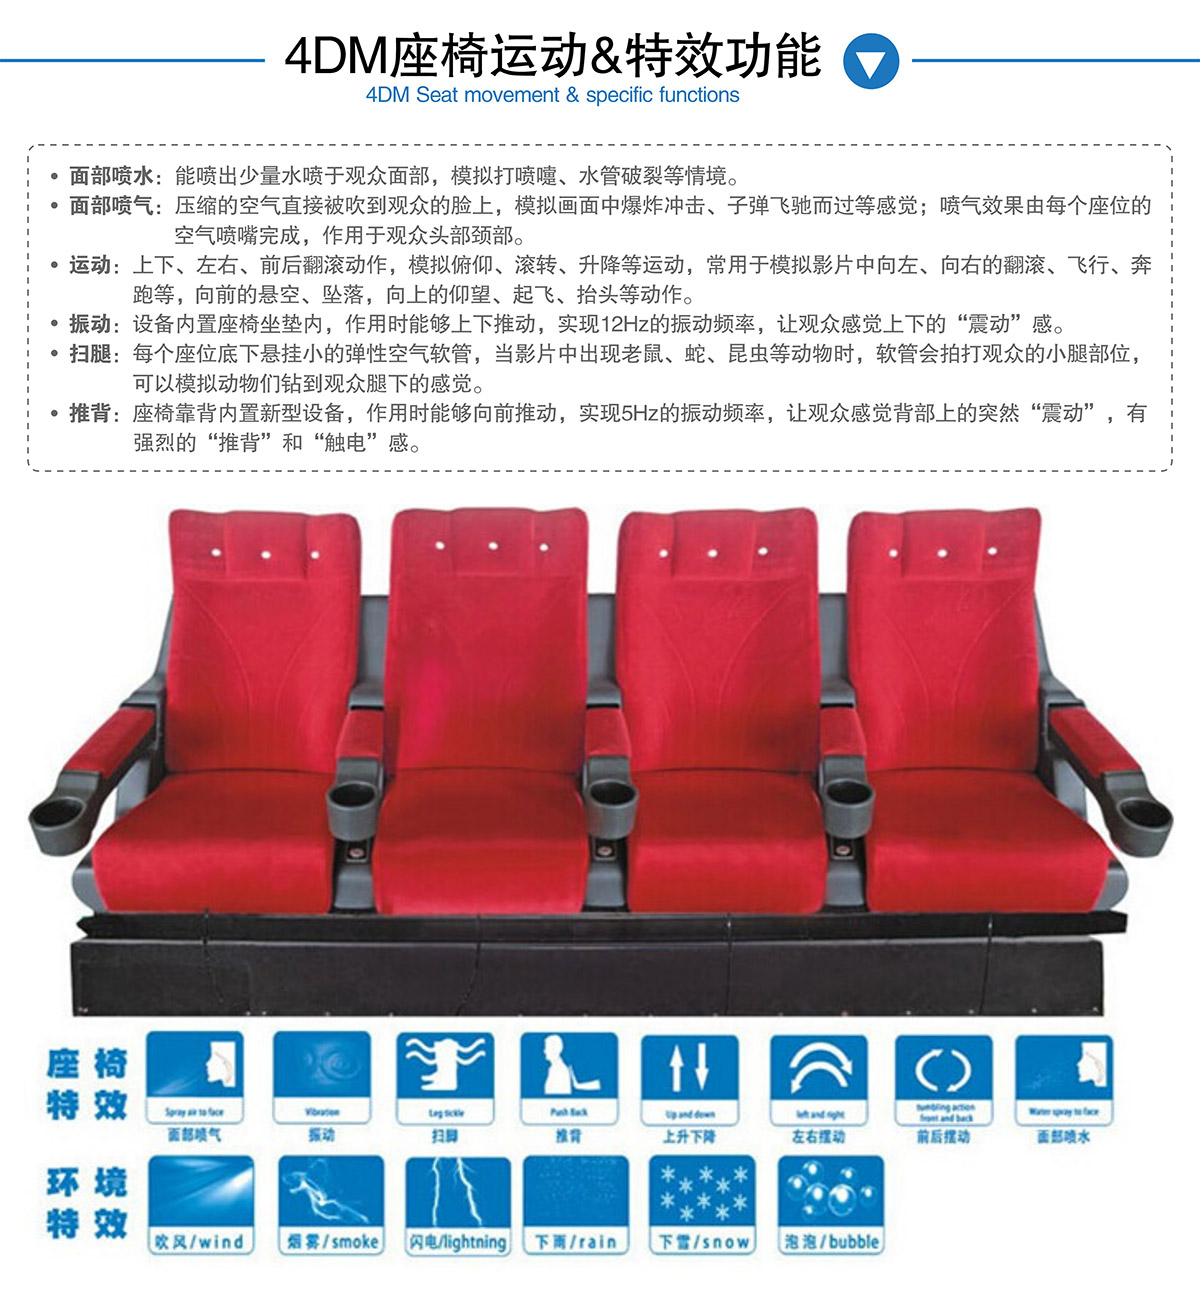 4DM座椅运动和特效功能.jpg